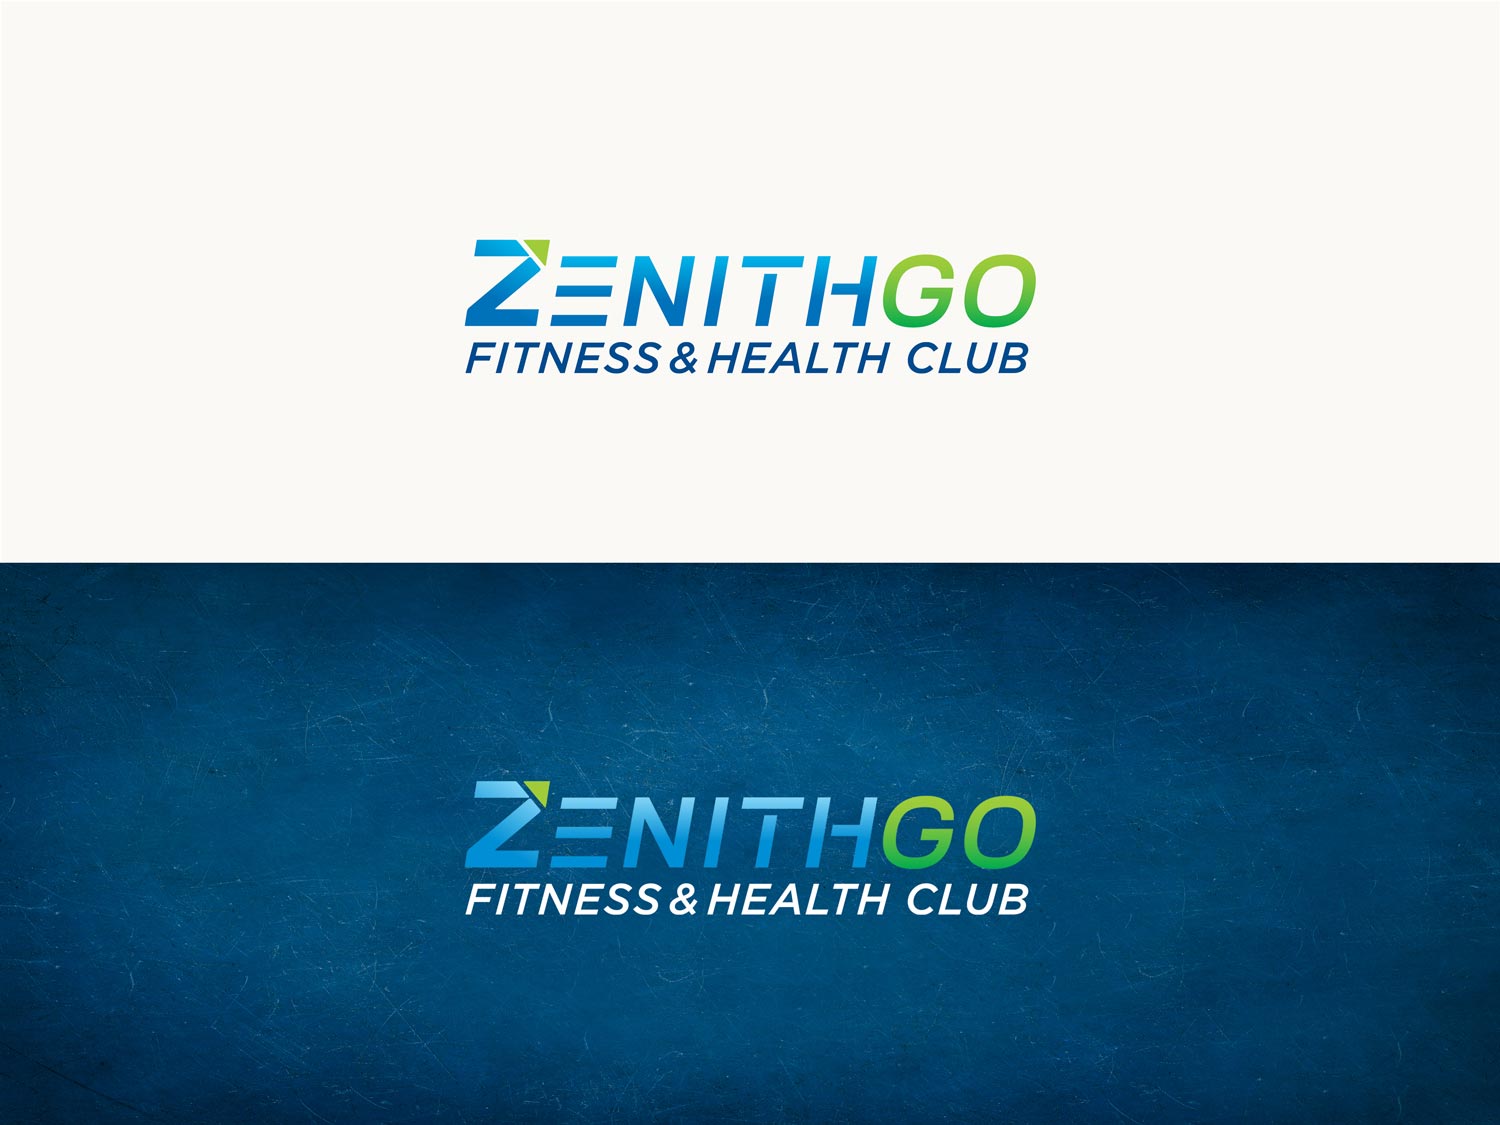 giset design zenith go logo en positivo y negativo